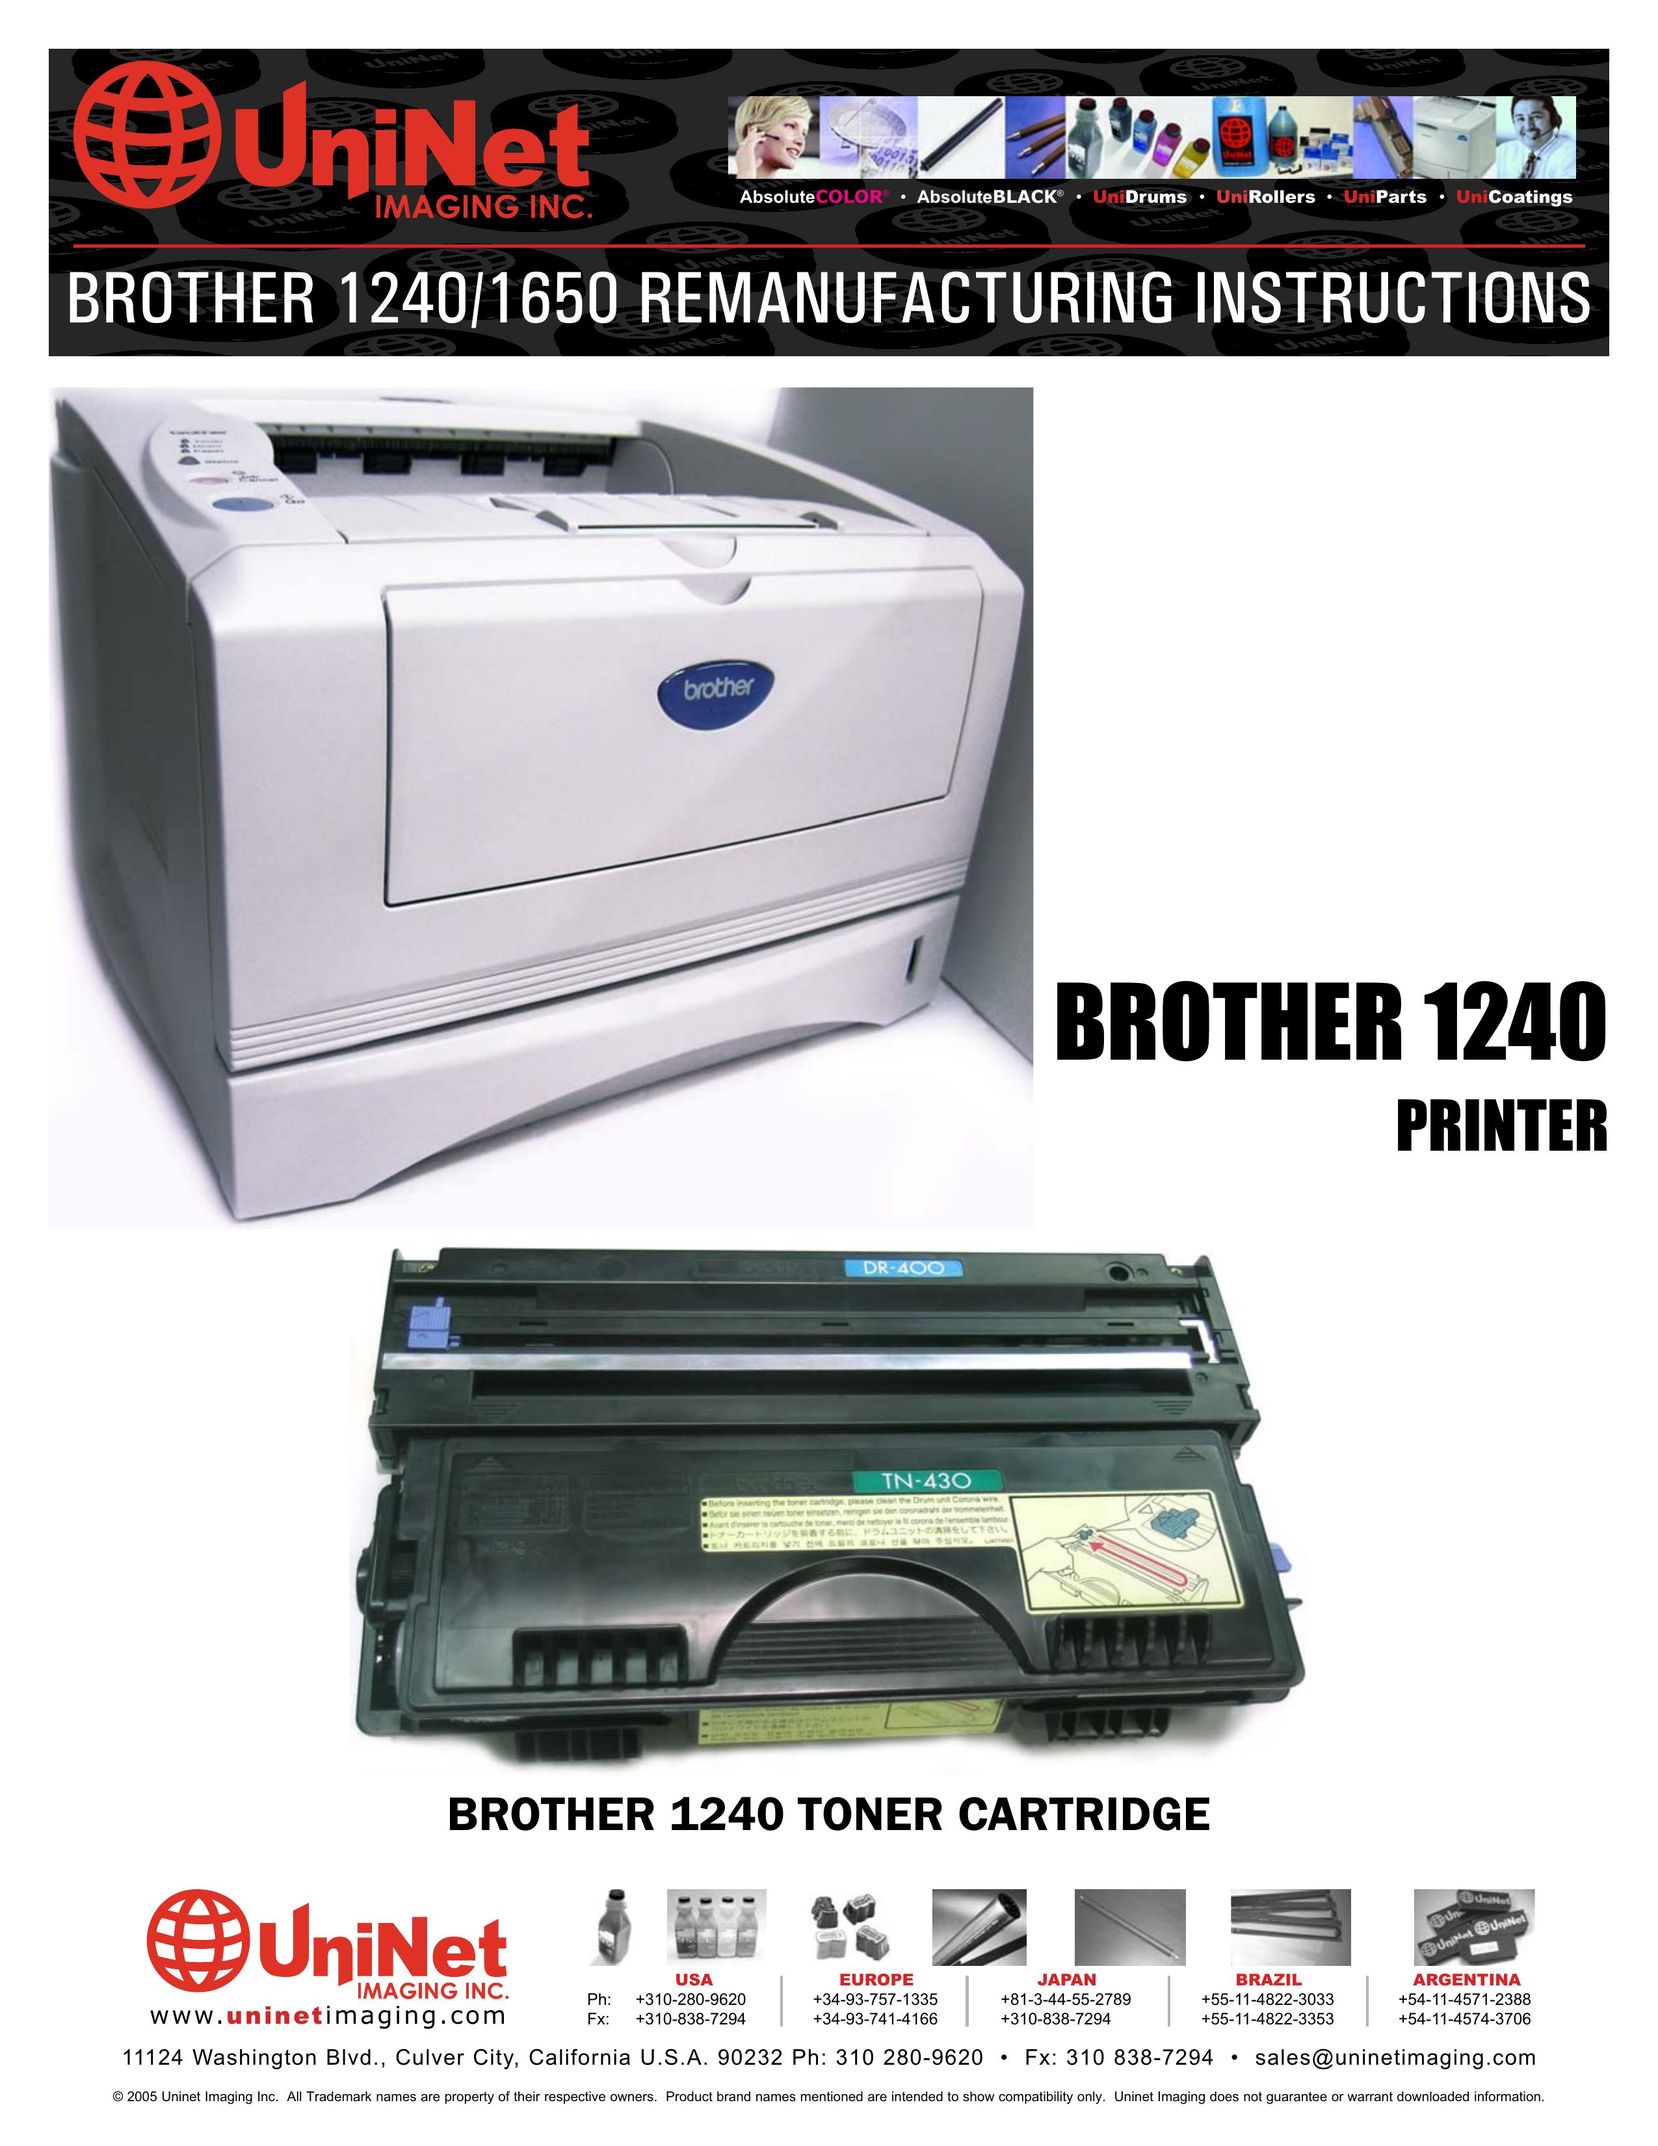 Brother 1240 Printer User Manual